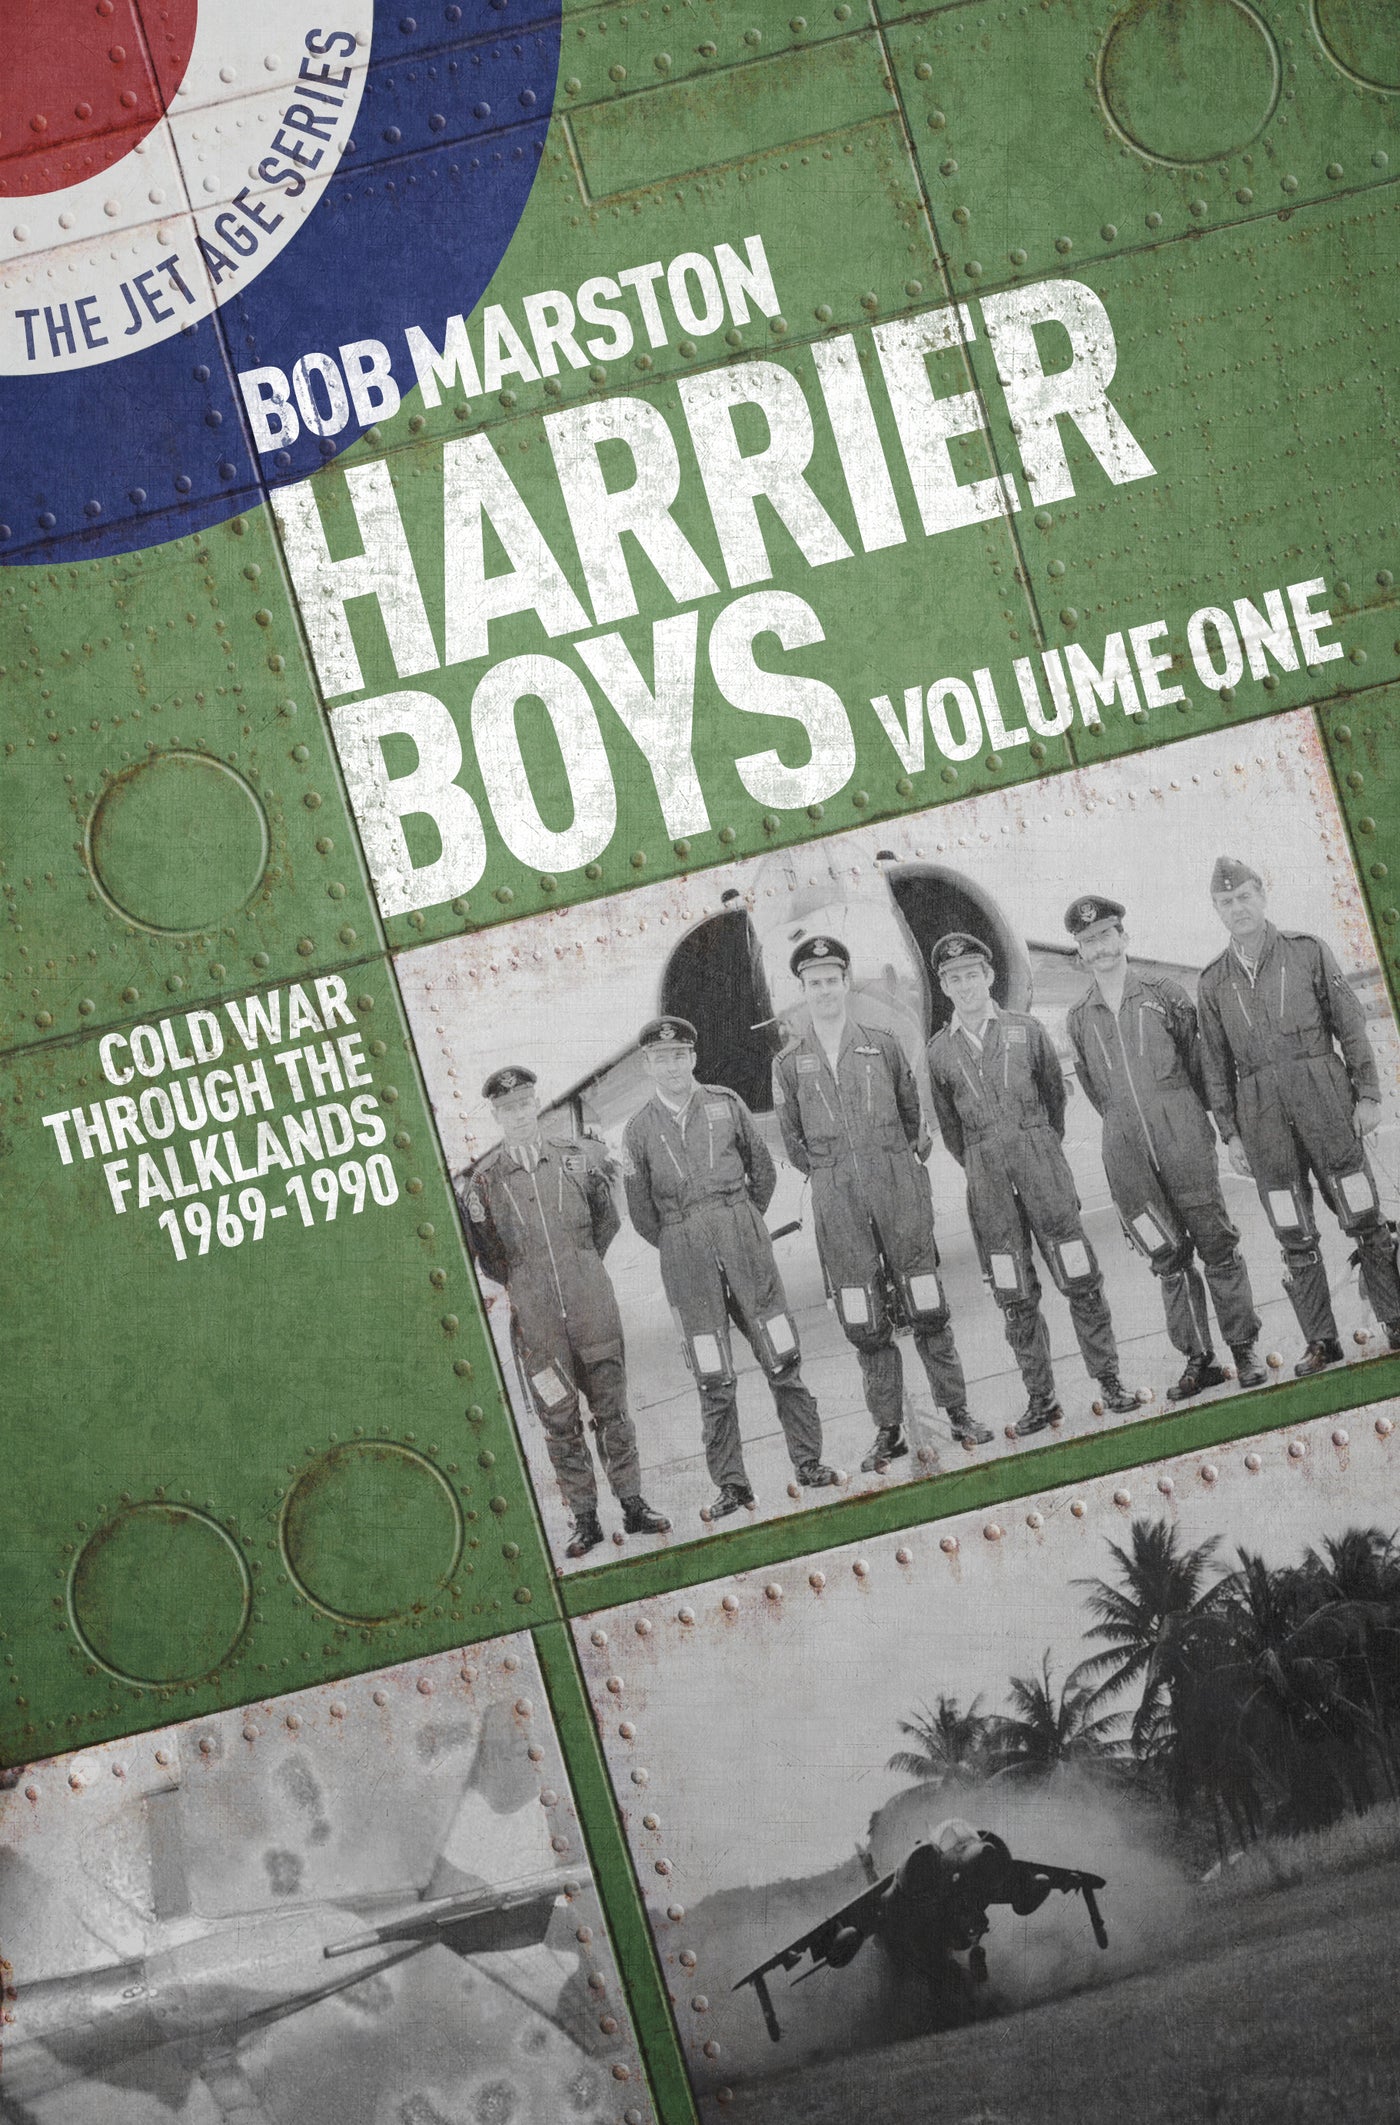 Harrier Boys Volume One